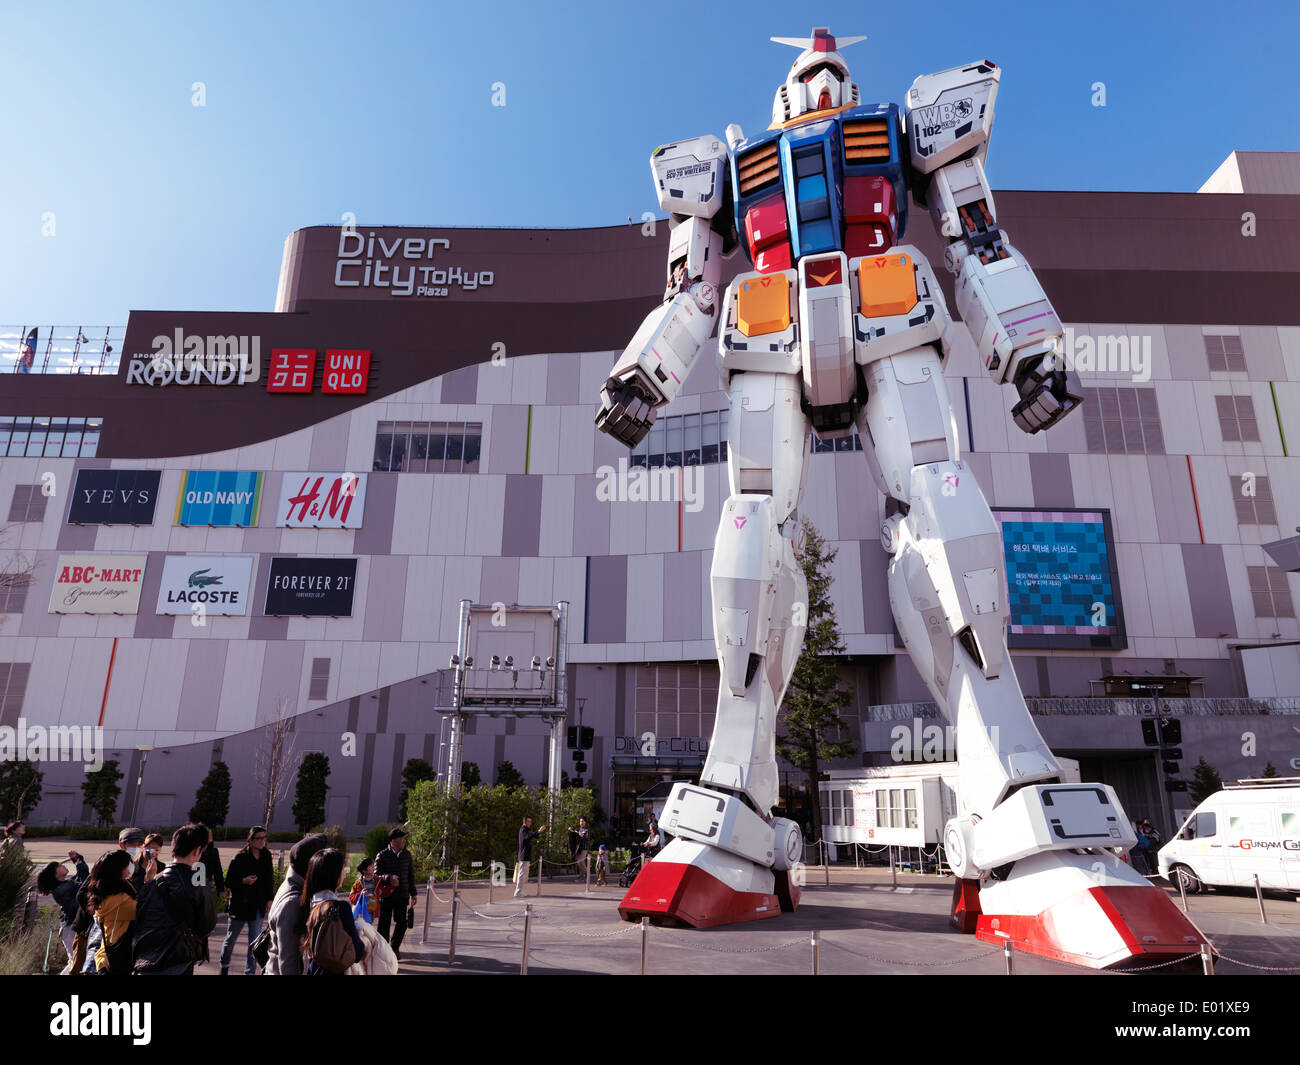 Licence disponible sur MaximImages.com - Gundam RX-78-2 statue lifesize en face de la ville de Diver, Odaiba, Tokyo, Japon Banque D'Images